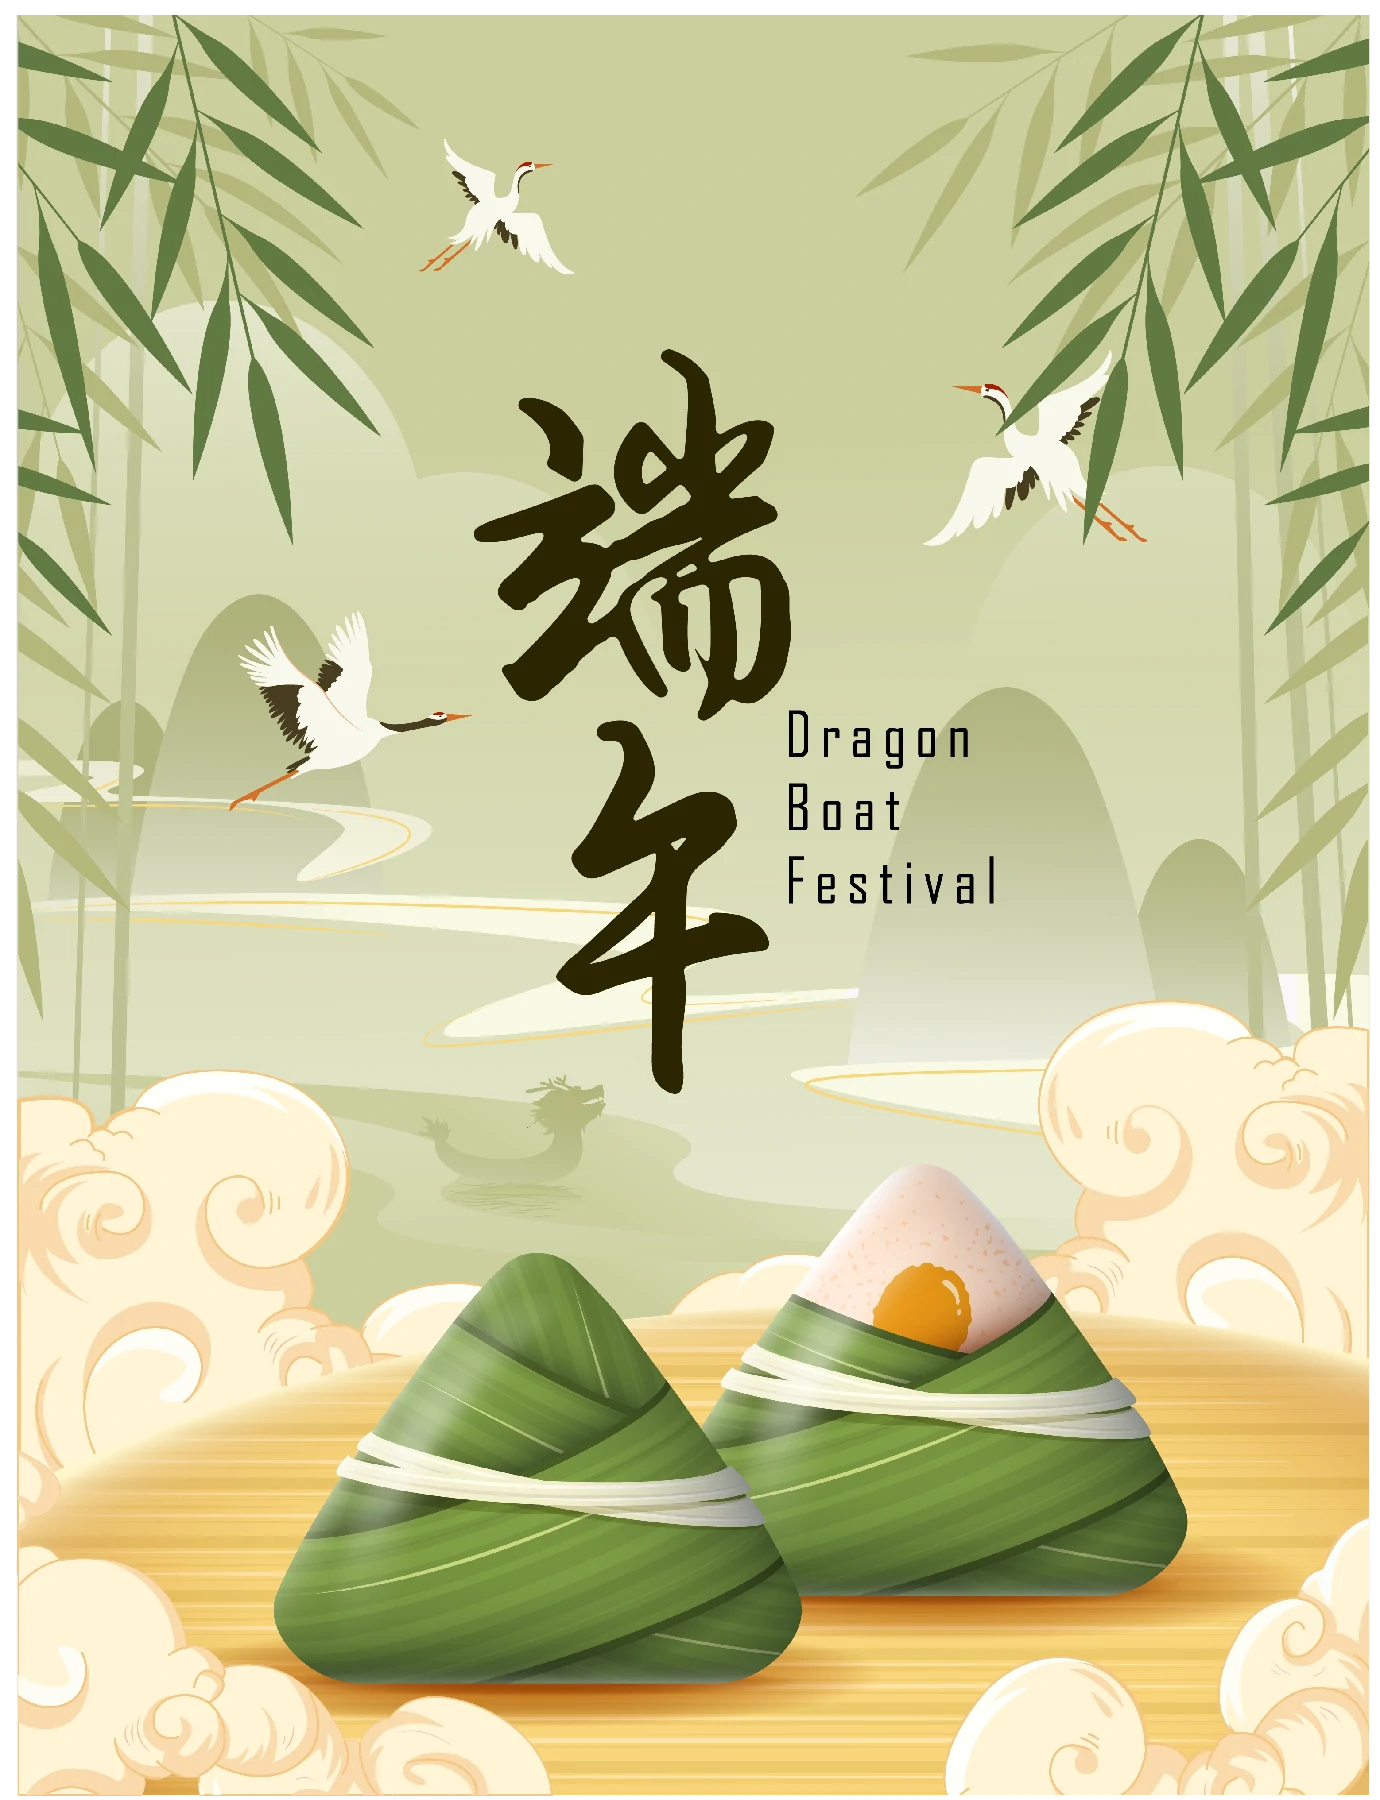 中国传统节日端午节端午安康赛龙舟包粽子插画海报AI矢量设计素材【012】